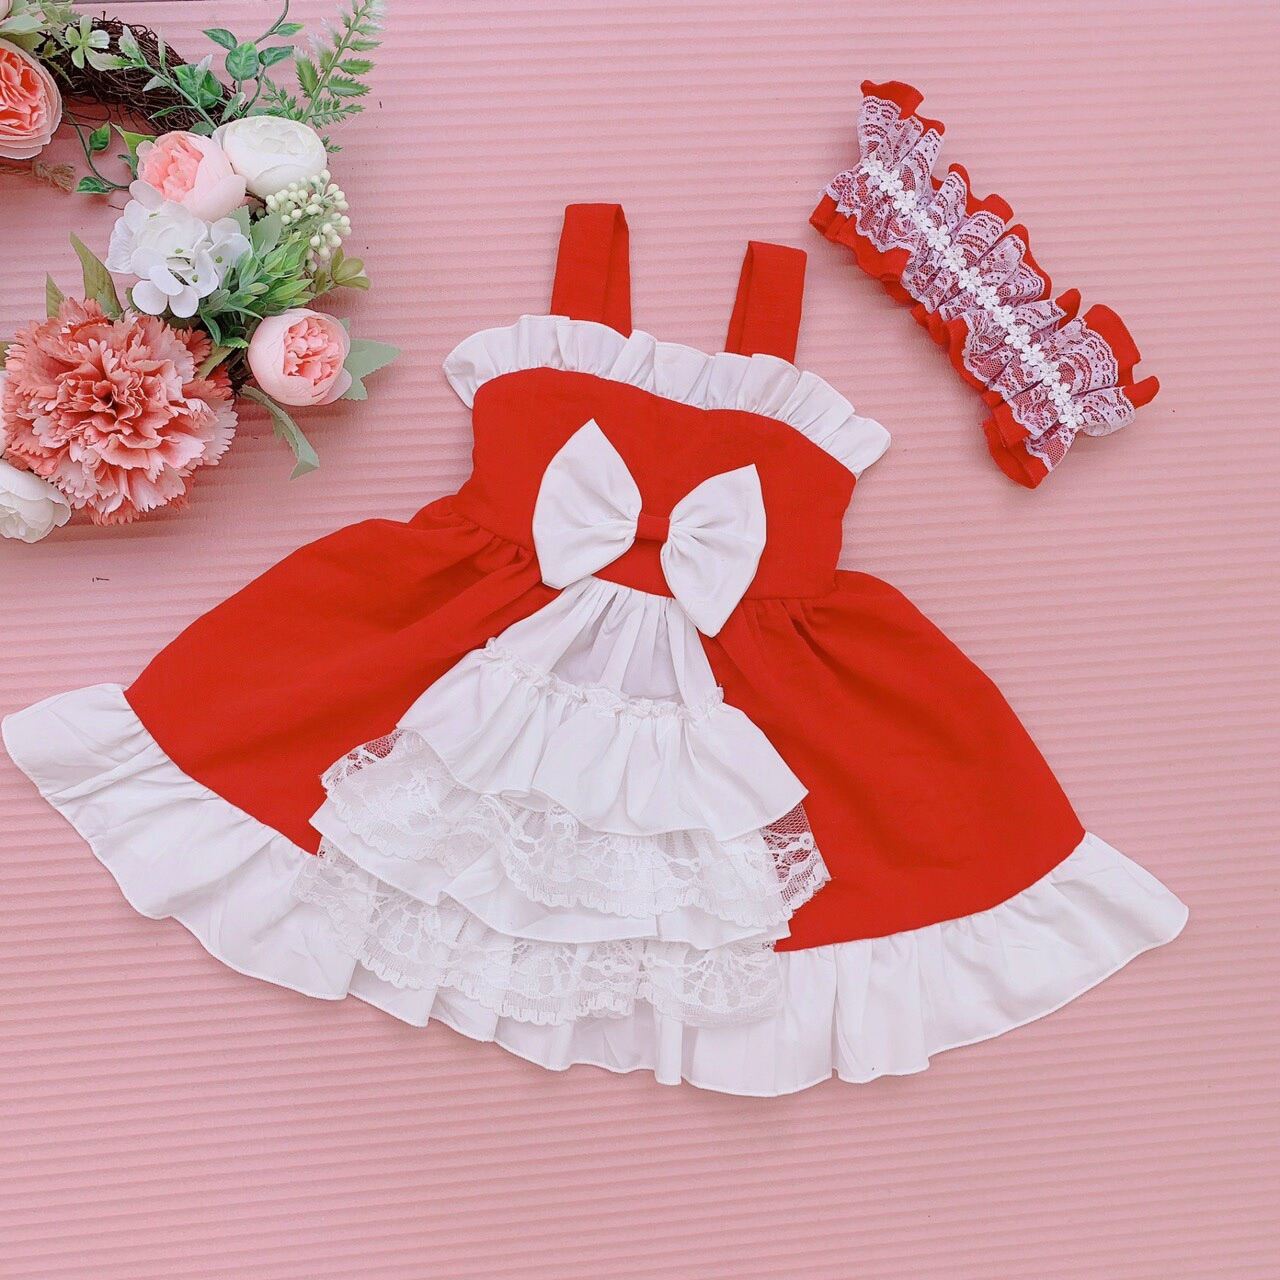 Order] YAS0634-Váy Lolita op cộc tay đỏ kèm phụ kiện cổ | Shopee Việt Nam